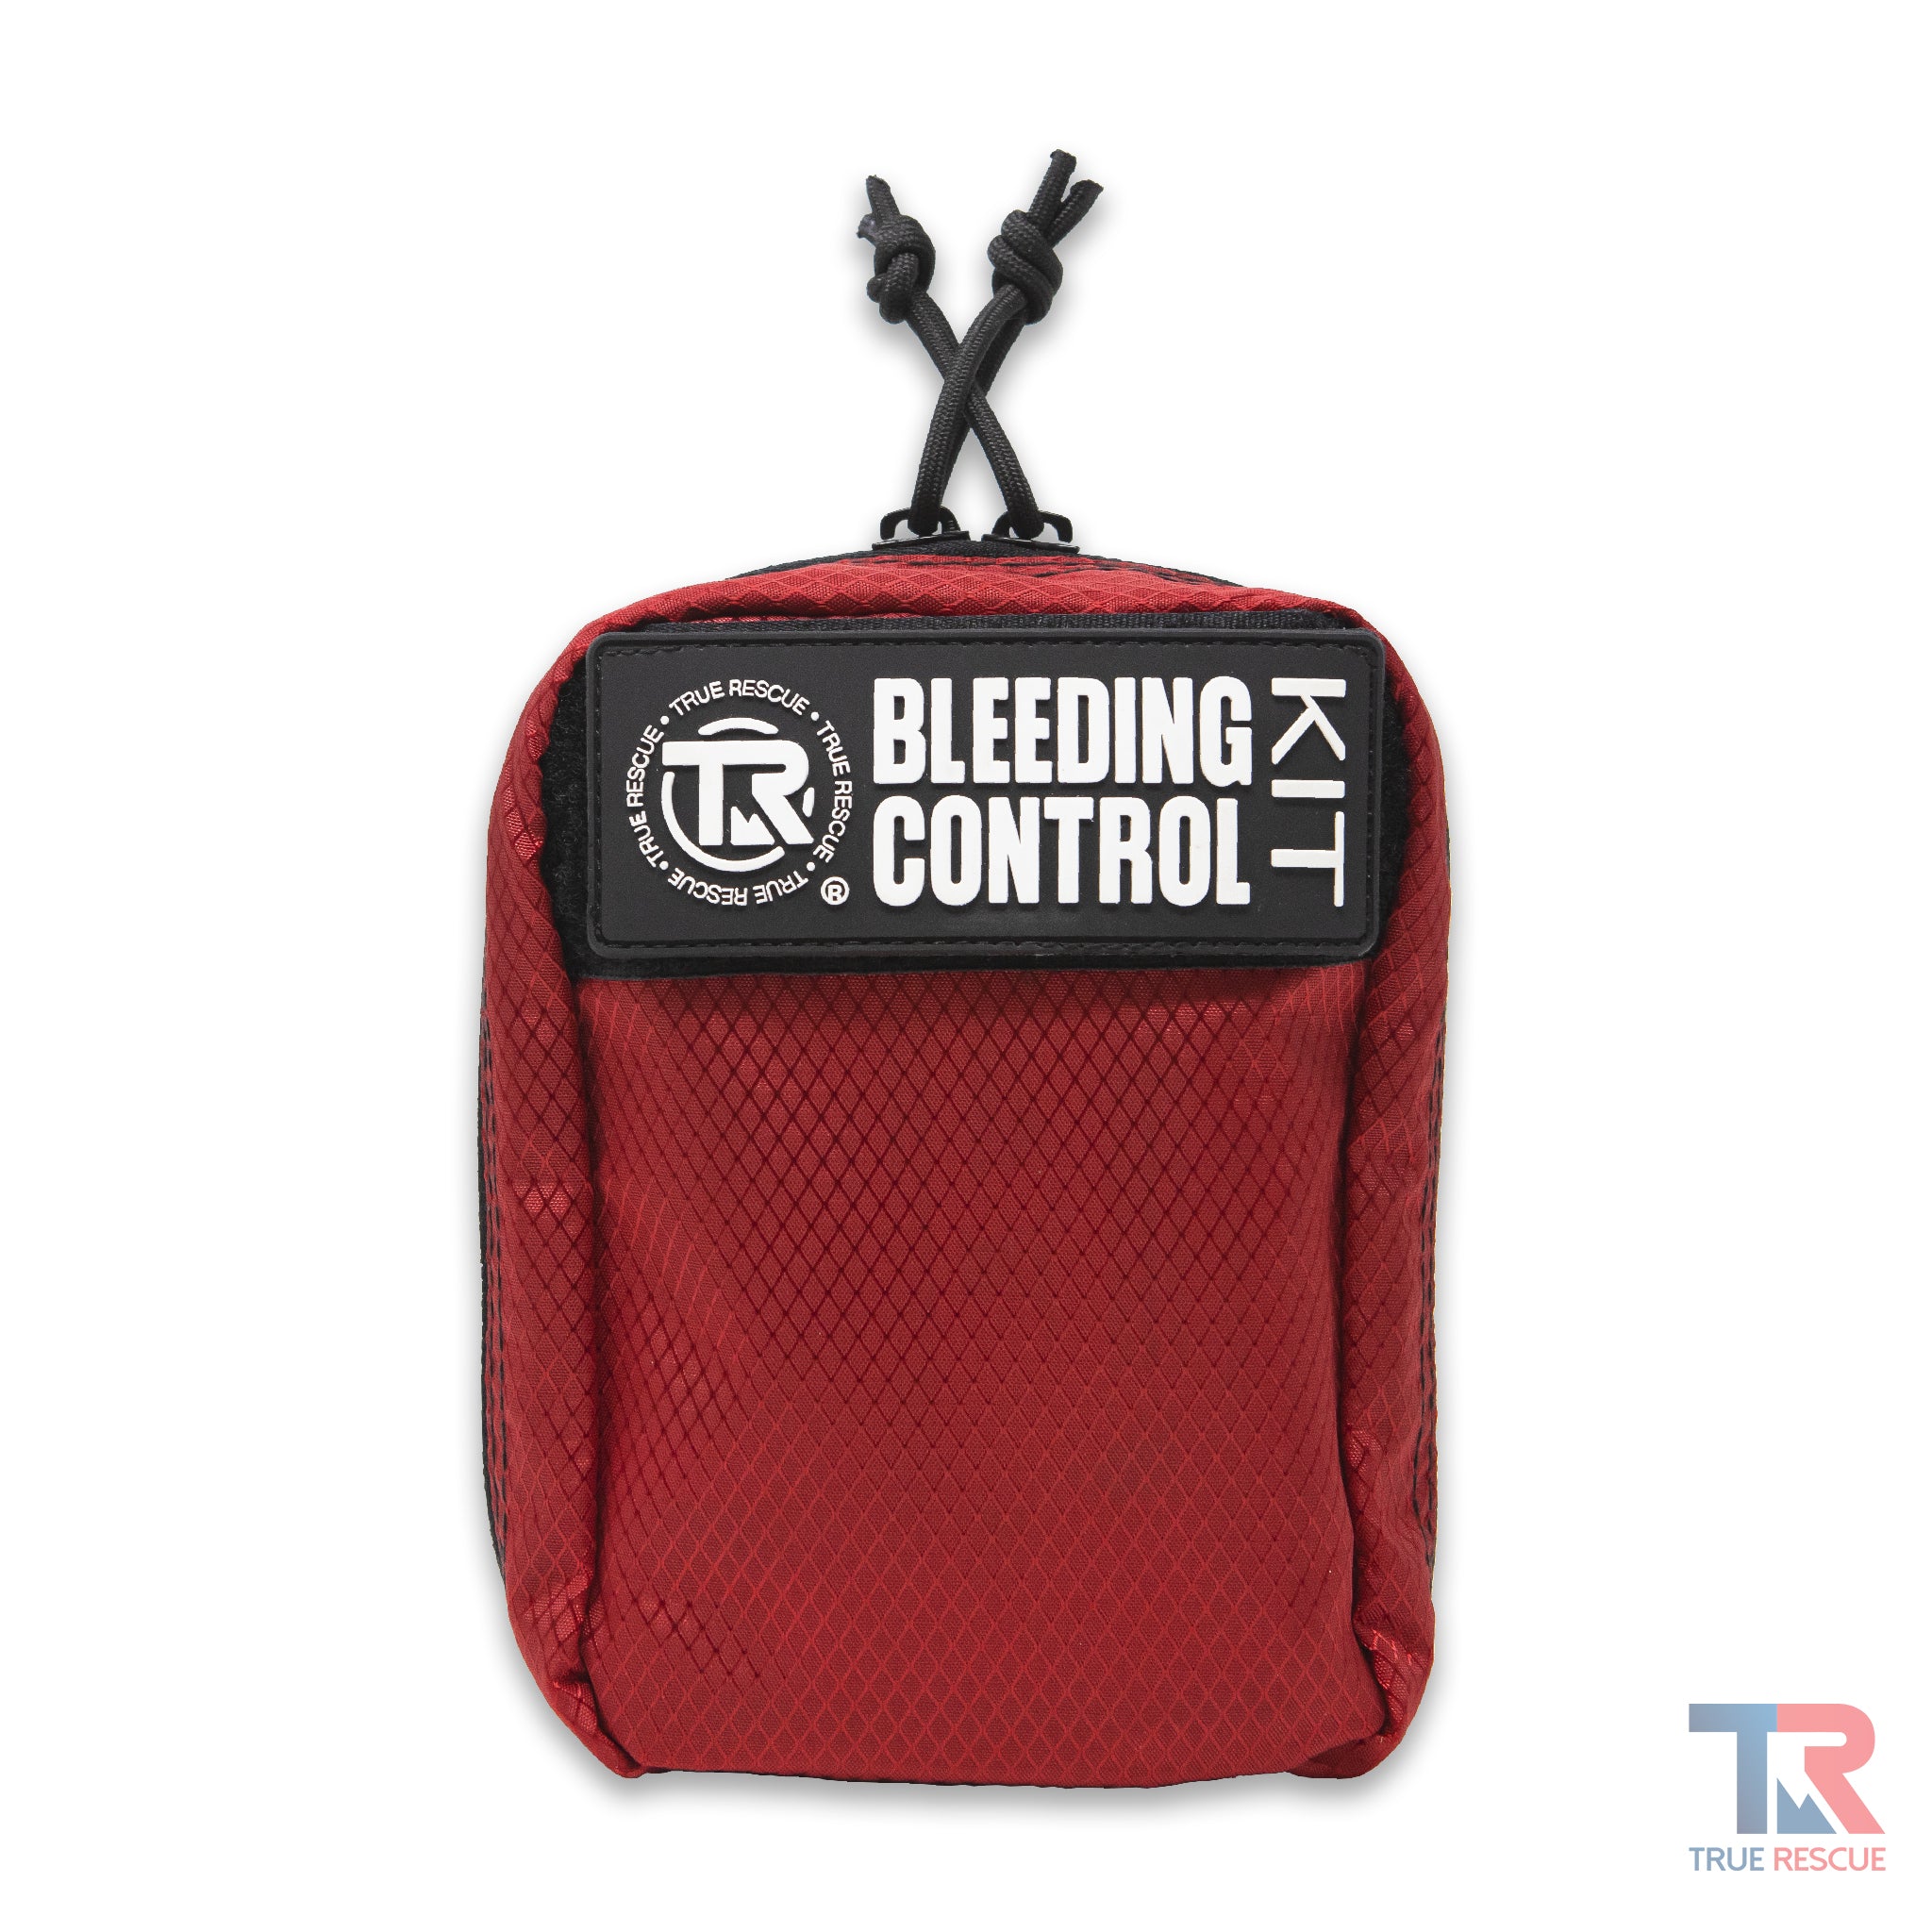 Soepel Verknald Rechtsaf Bleeding Control Kit by True Rescue | Free Shipping